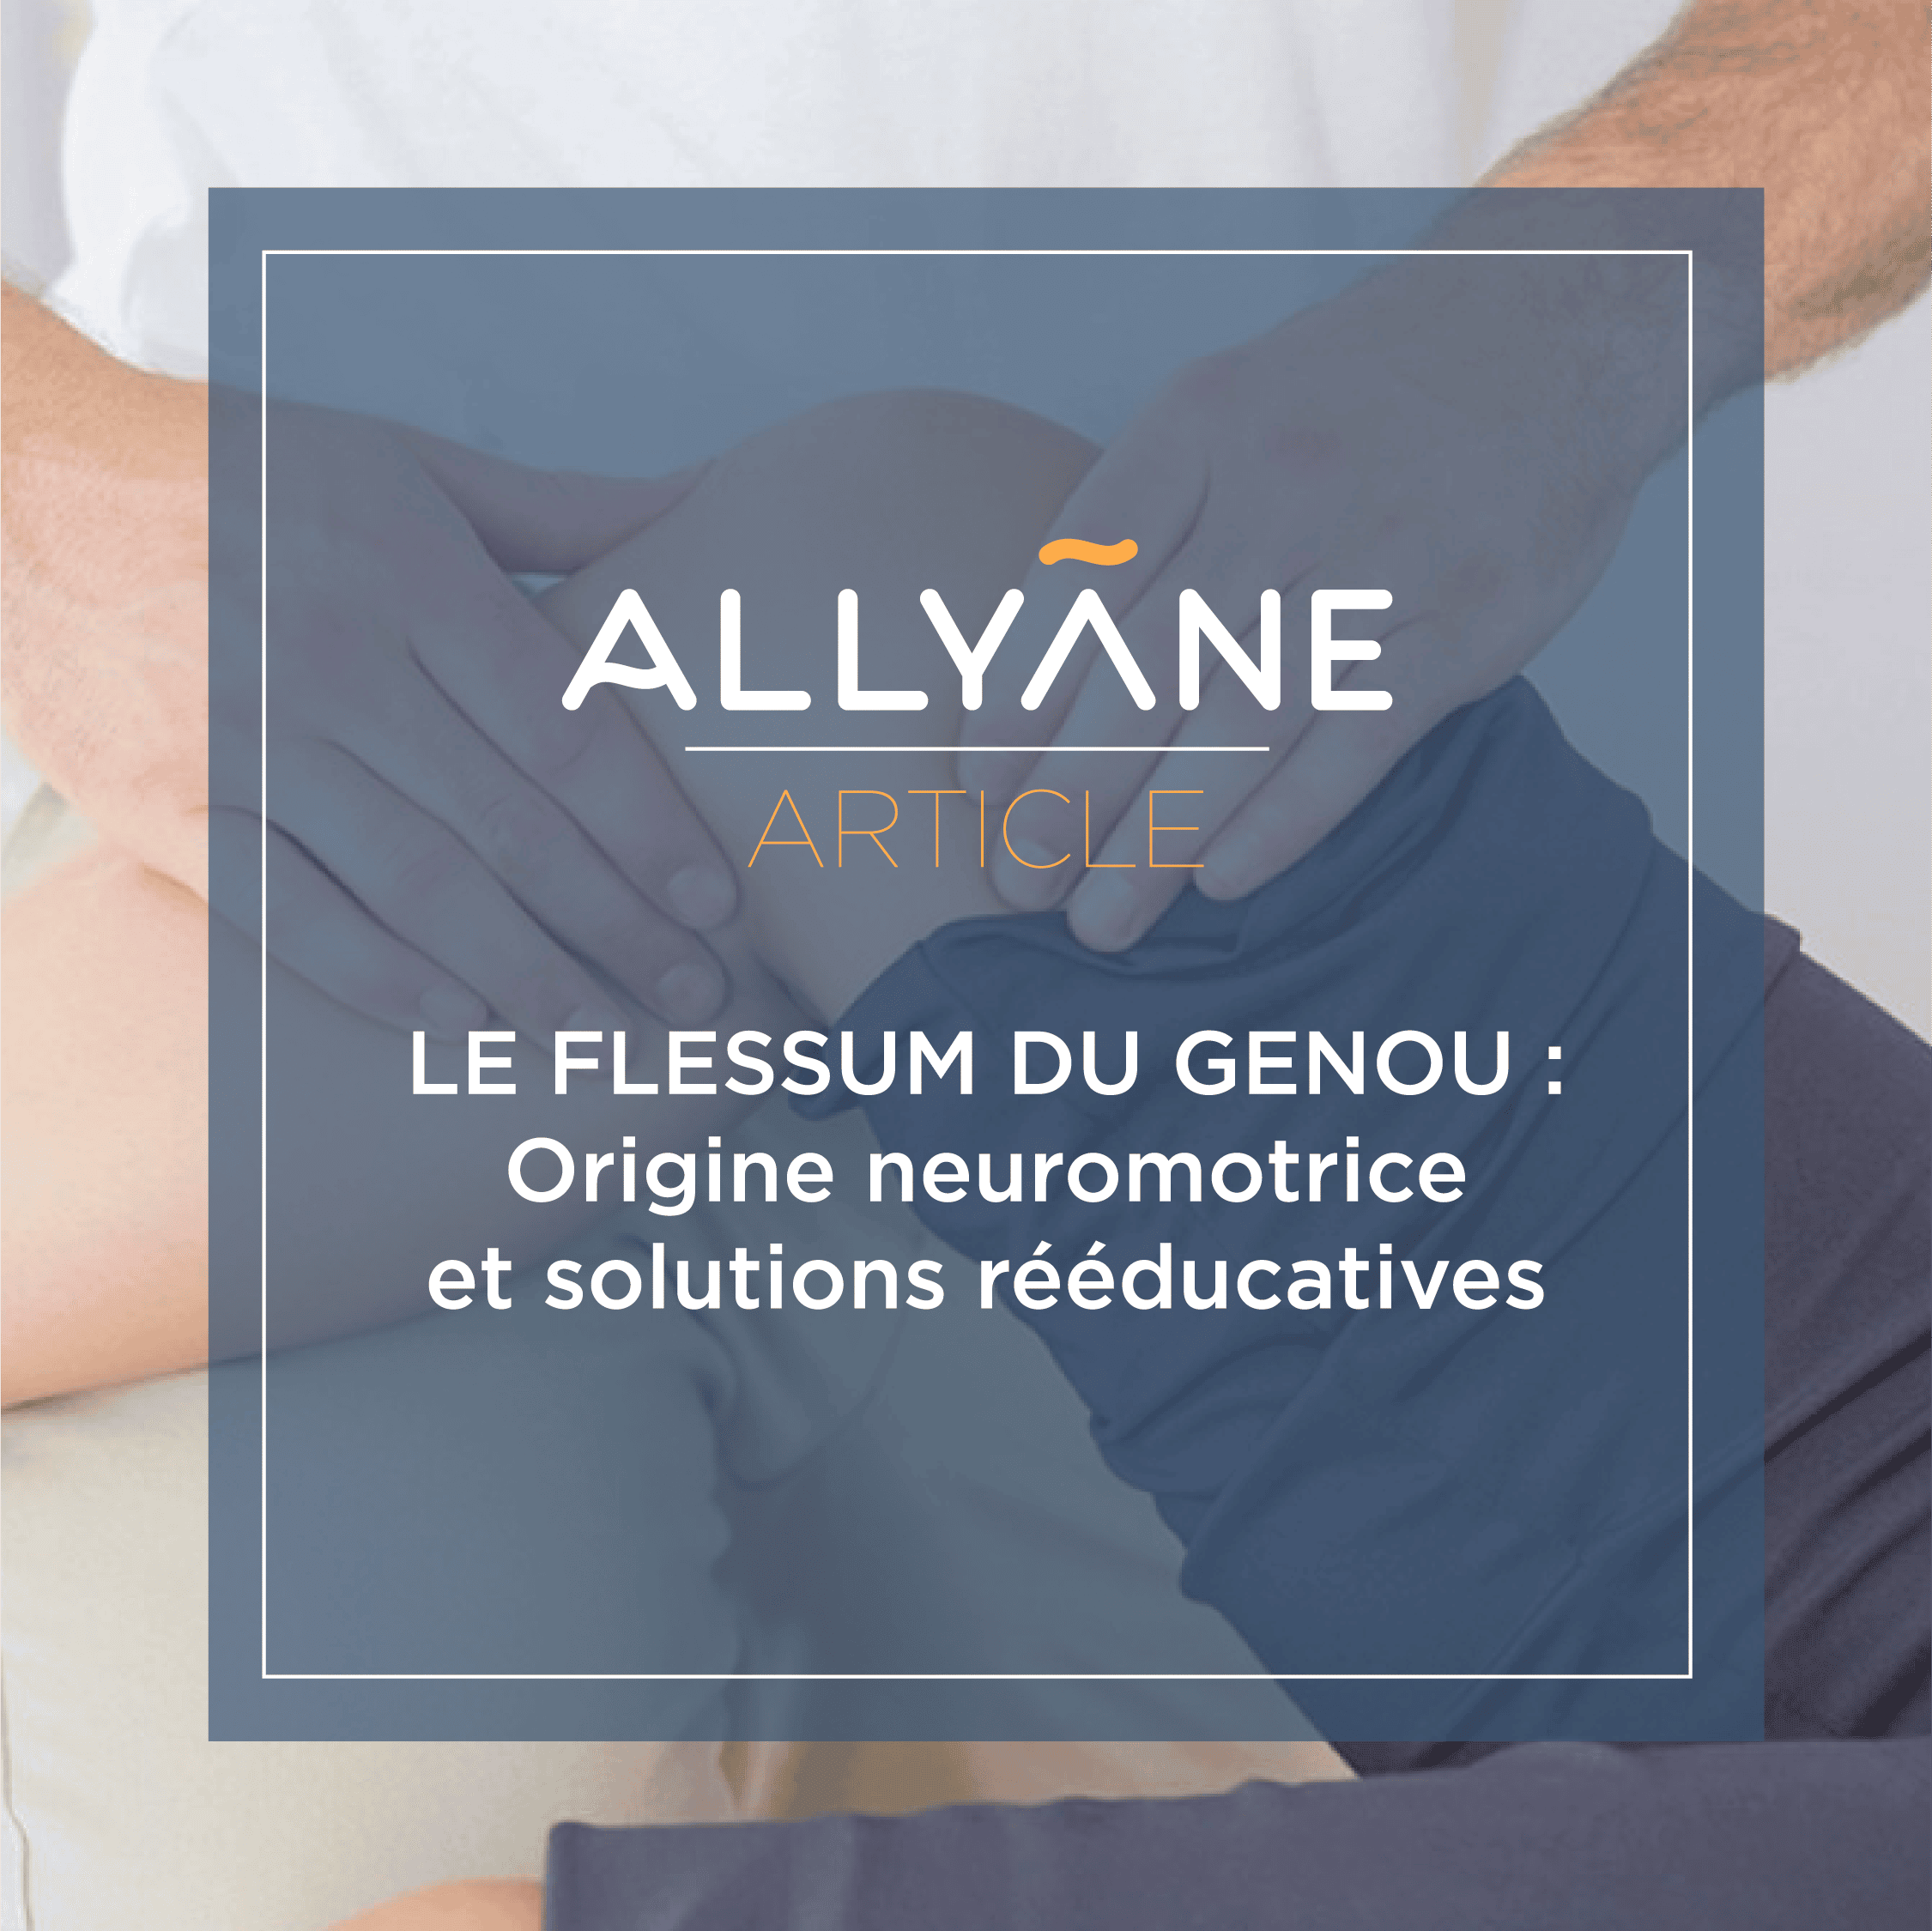 Le flessum du genou : origine neuromotrice et solutions rééducatives